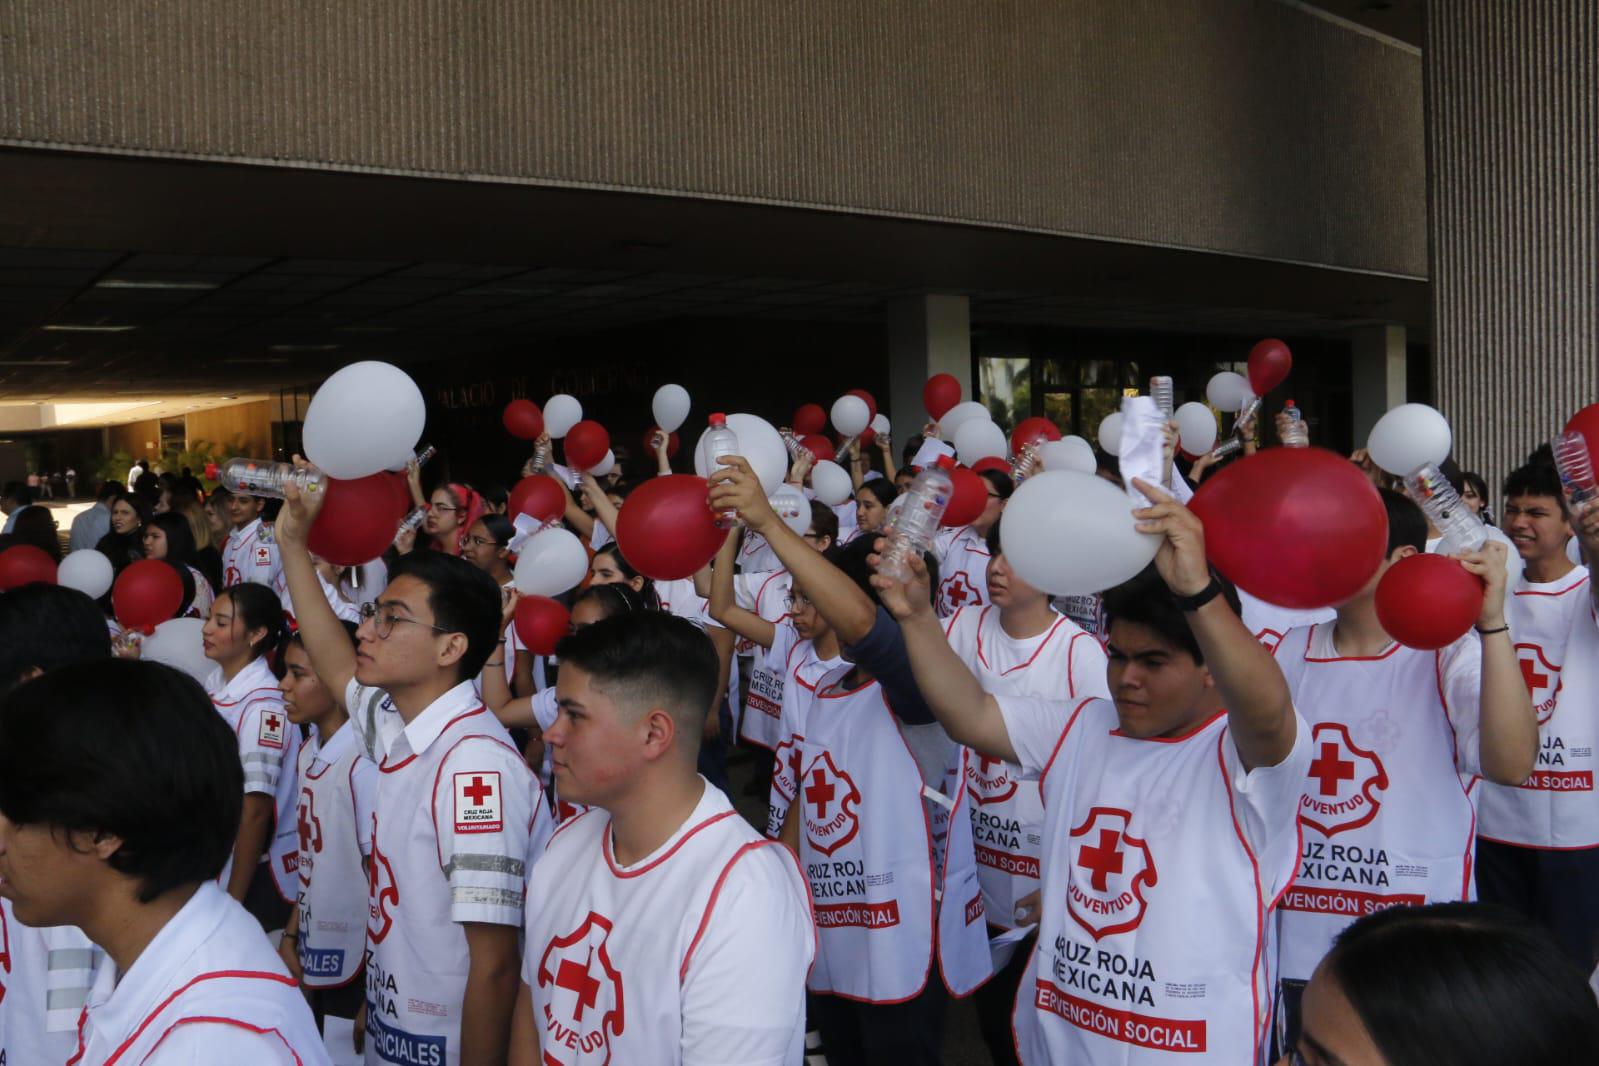 $!Arranca colecta de Cruz Roja bajo el lema ‘Todos somos héroes’ en Sinaloa